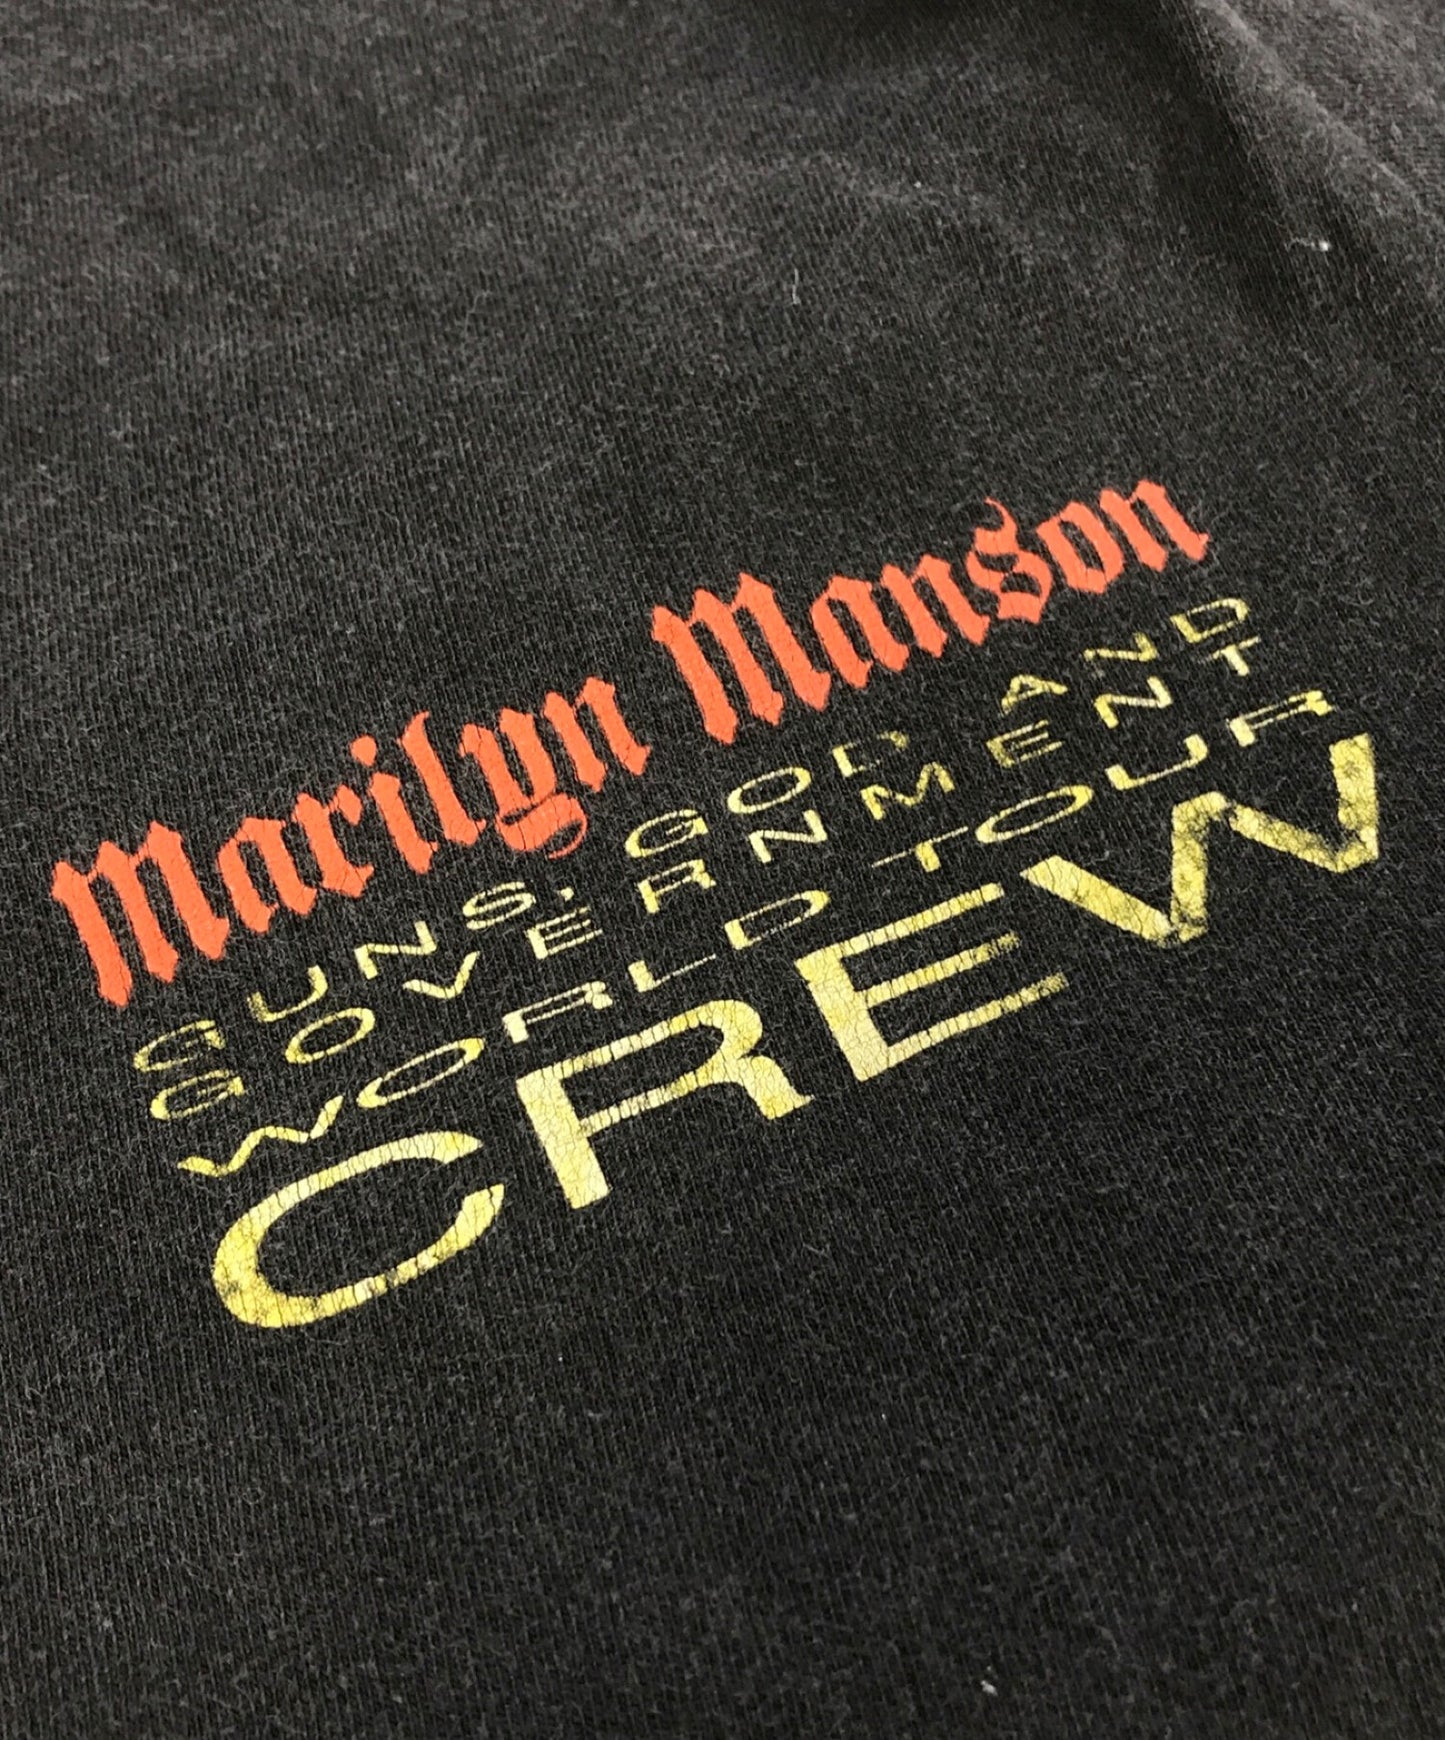 เสื้อยืด Marilyn Manson Band